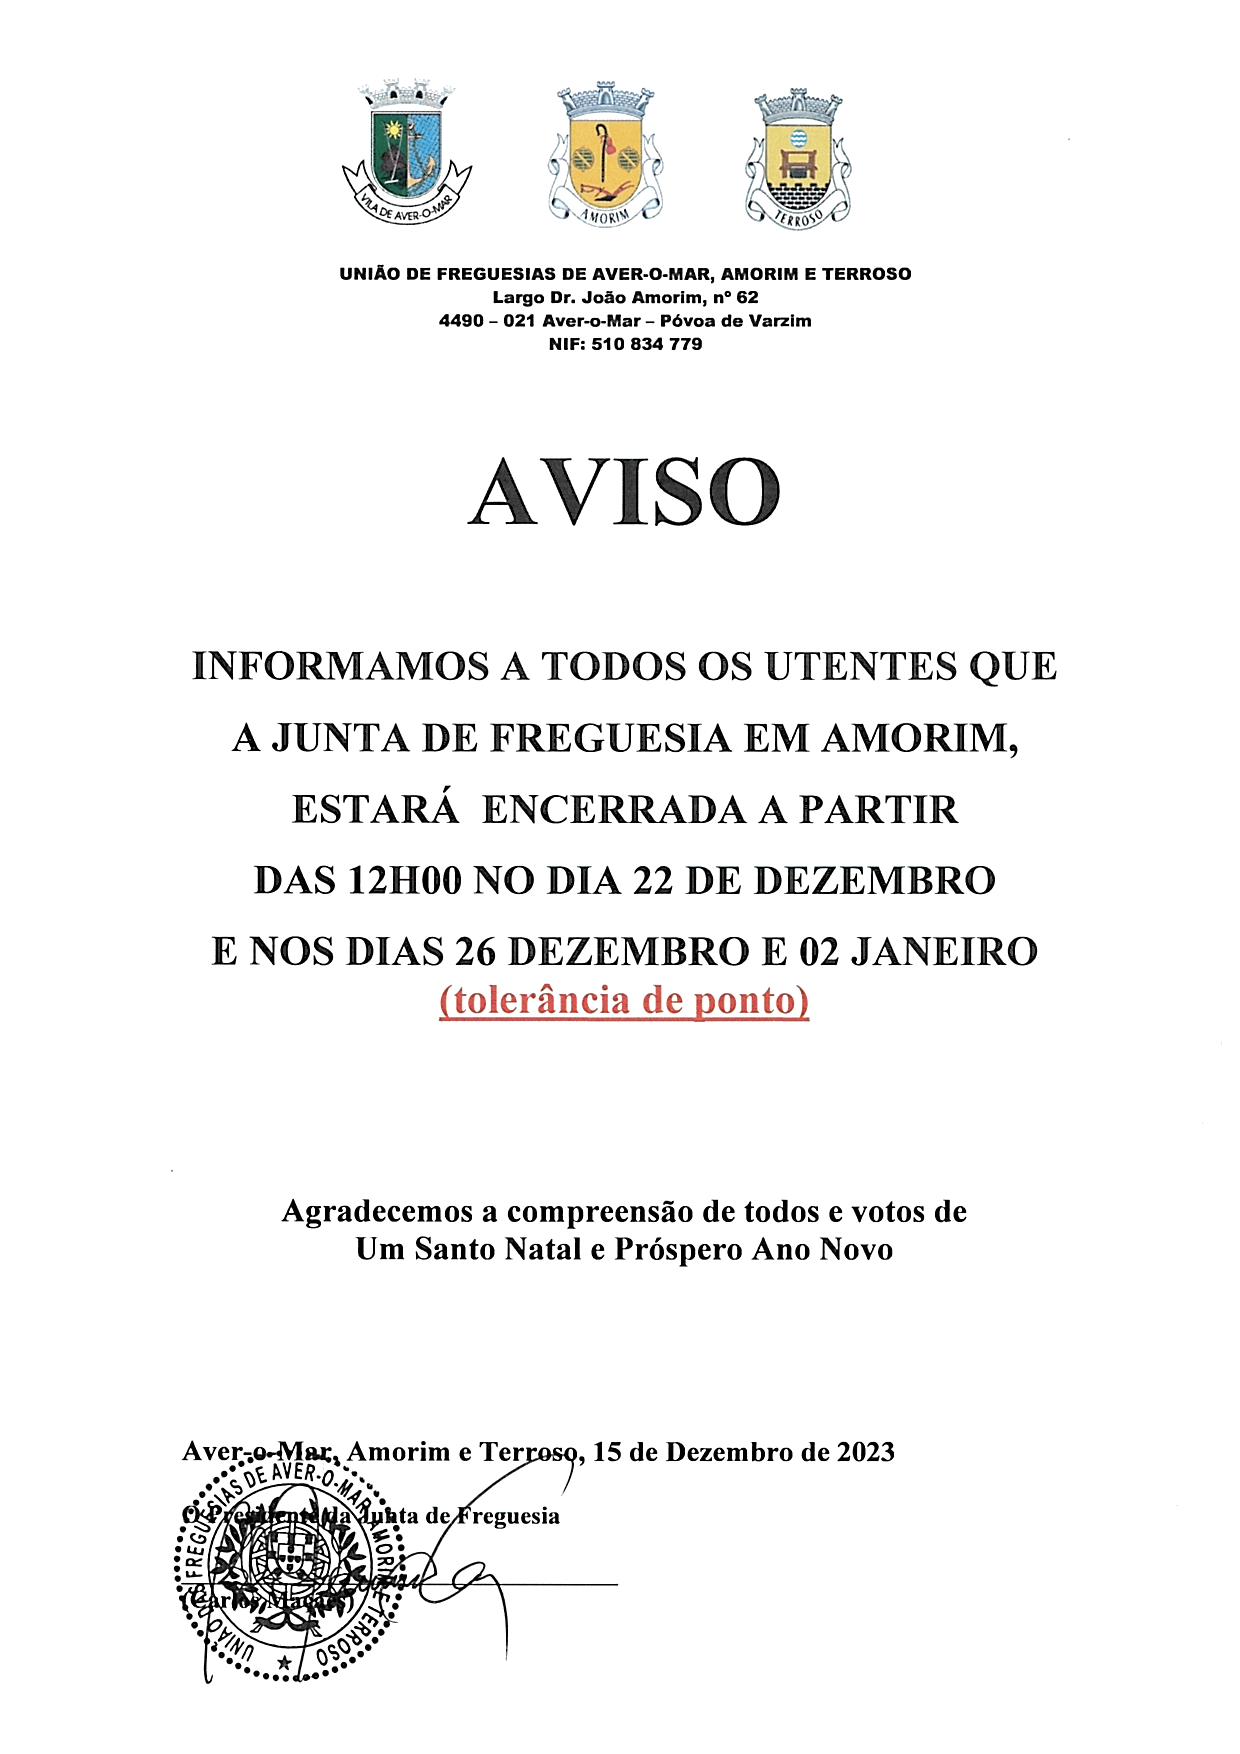 Encerramento da Junta de Freguesia em Amorim nos dias 22 e 26 Dezembro 2023 e dia 02 Janeiro 2024